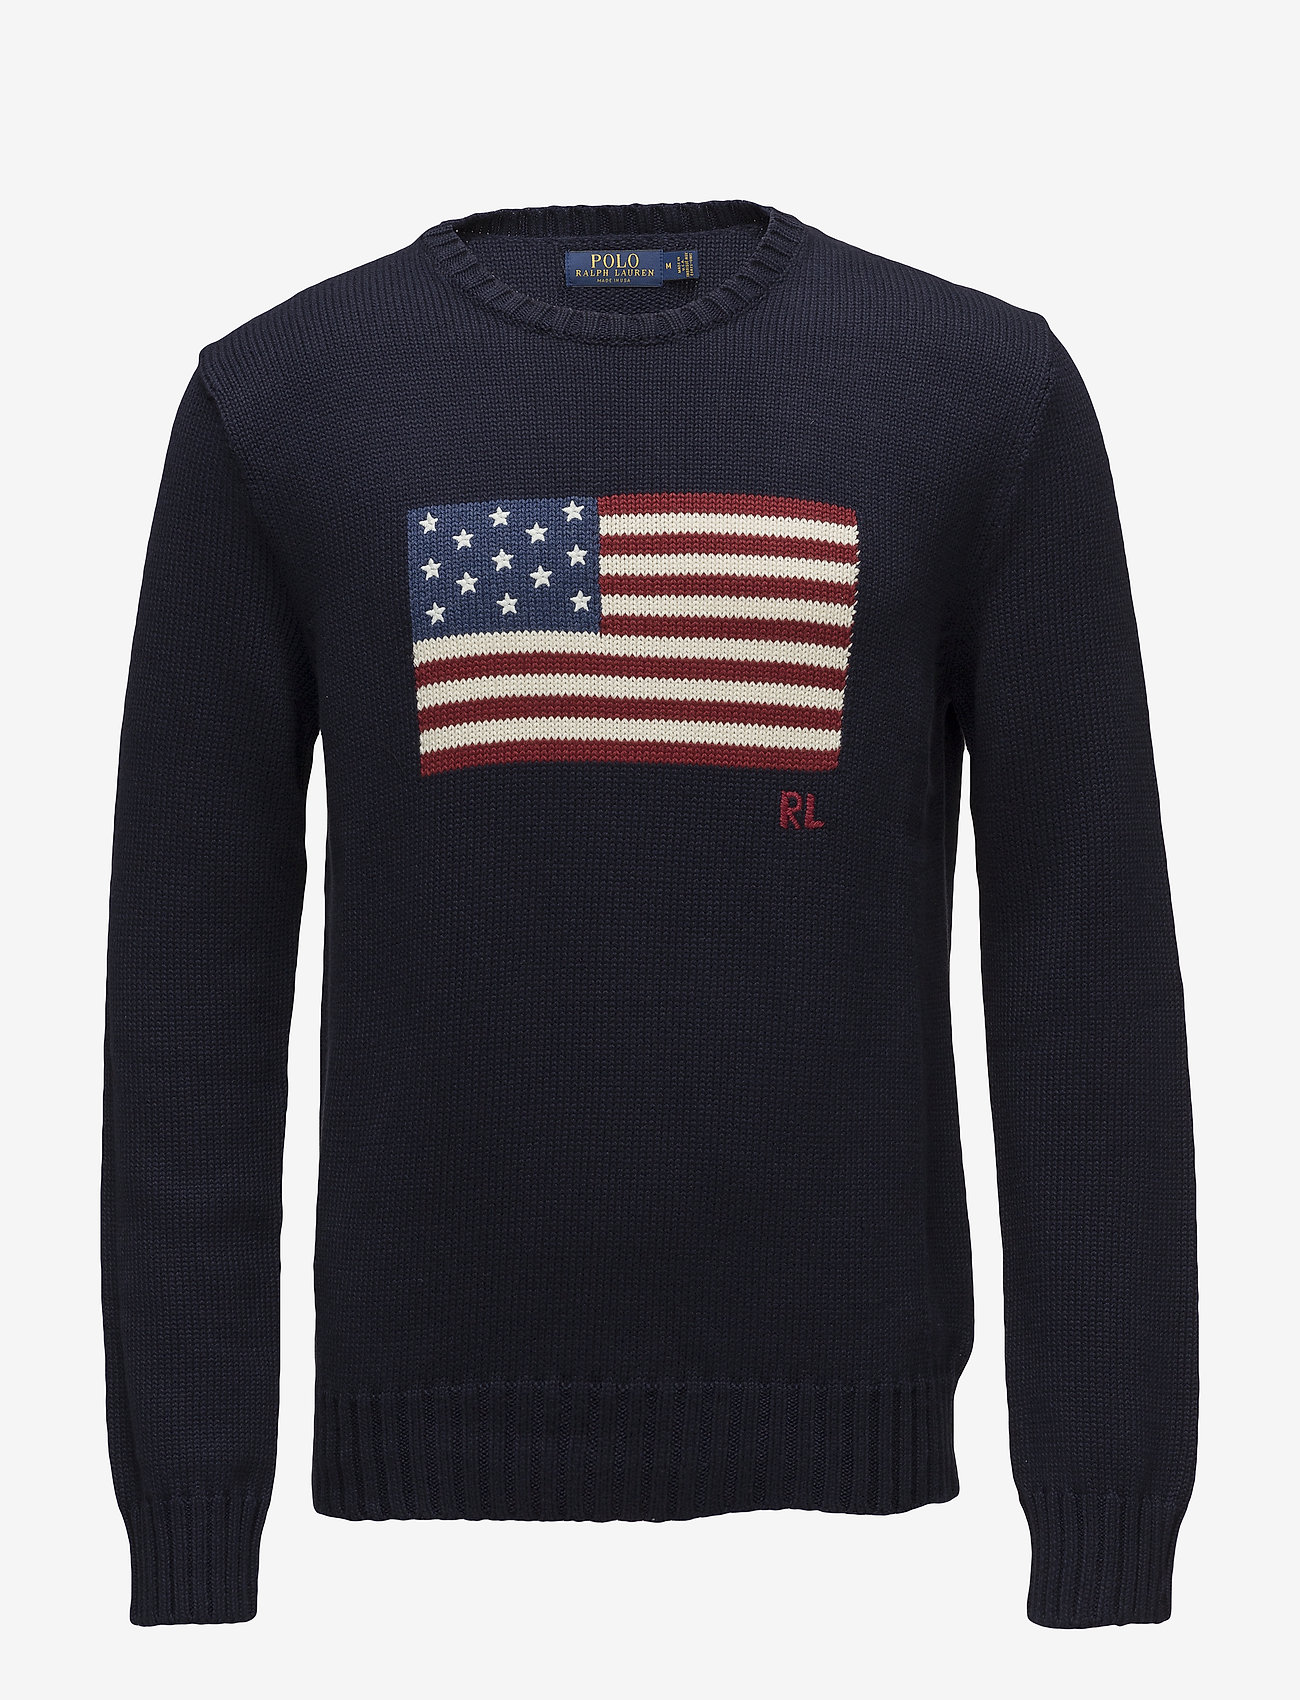 Polo Ralph Lauren The Iconic Flag Sweater - Truien met ronde hals ...